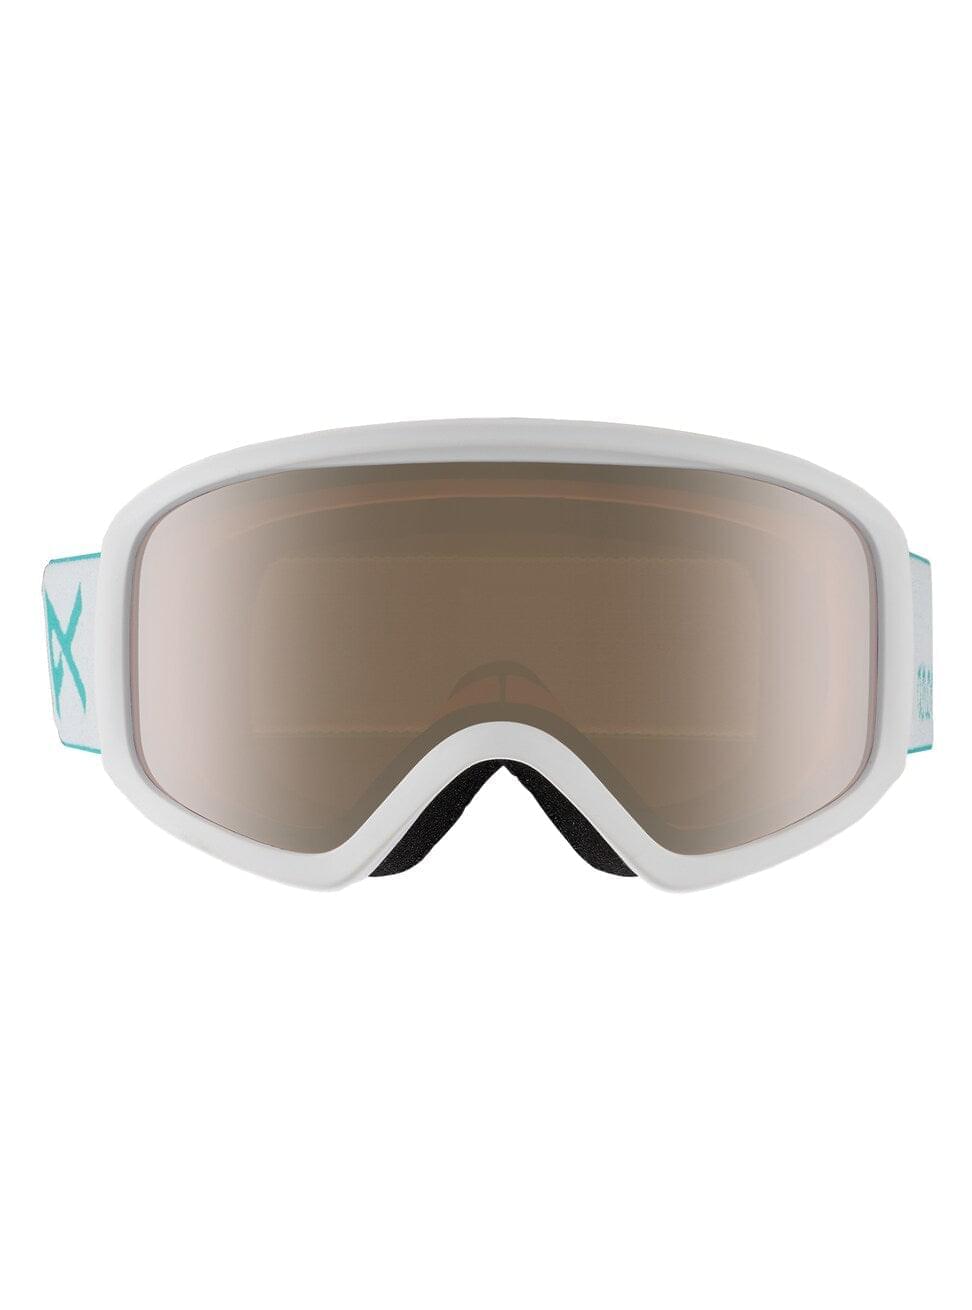 Anon Insight Brille + Bonusglas Weiß | Meistverkaufte Produkte | Neue Produkte | Neueste Produkte | surfdevils.com